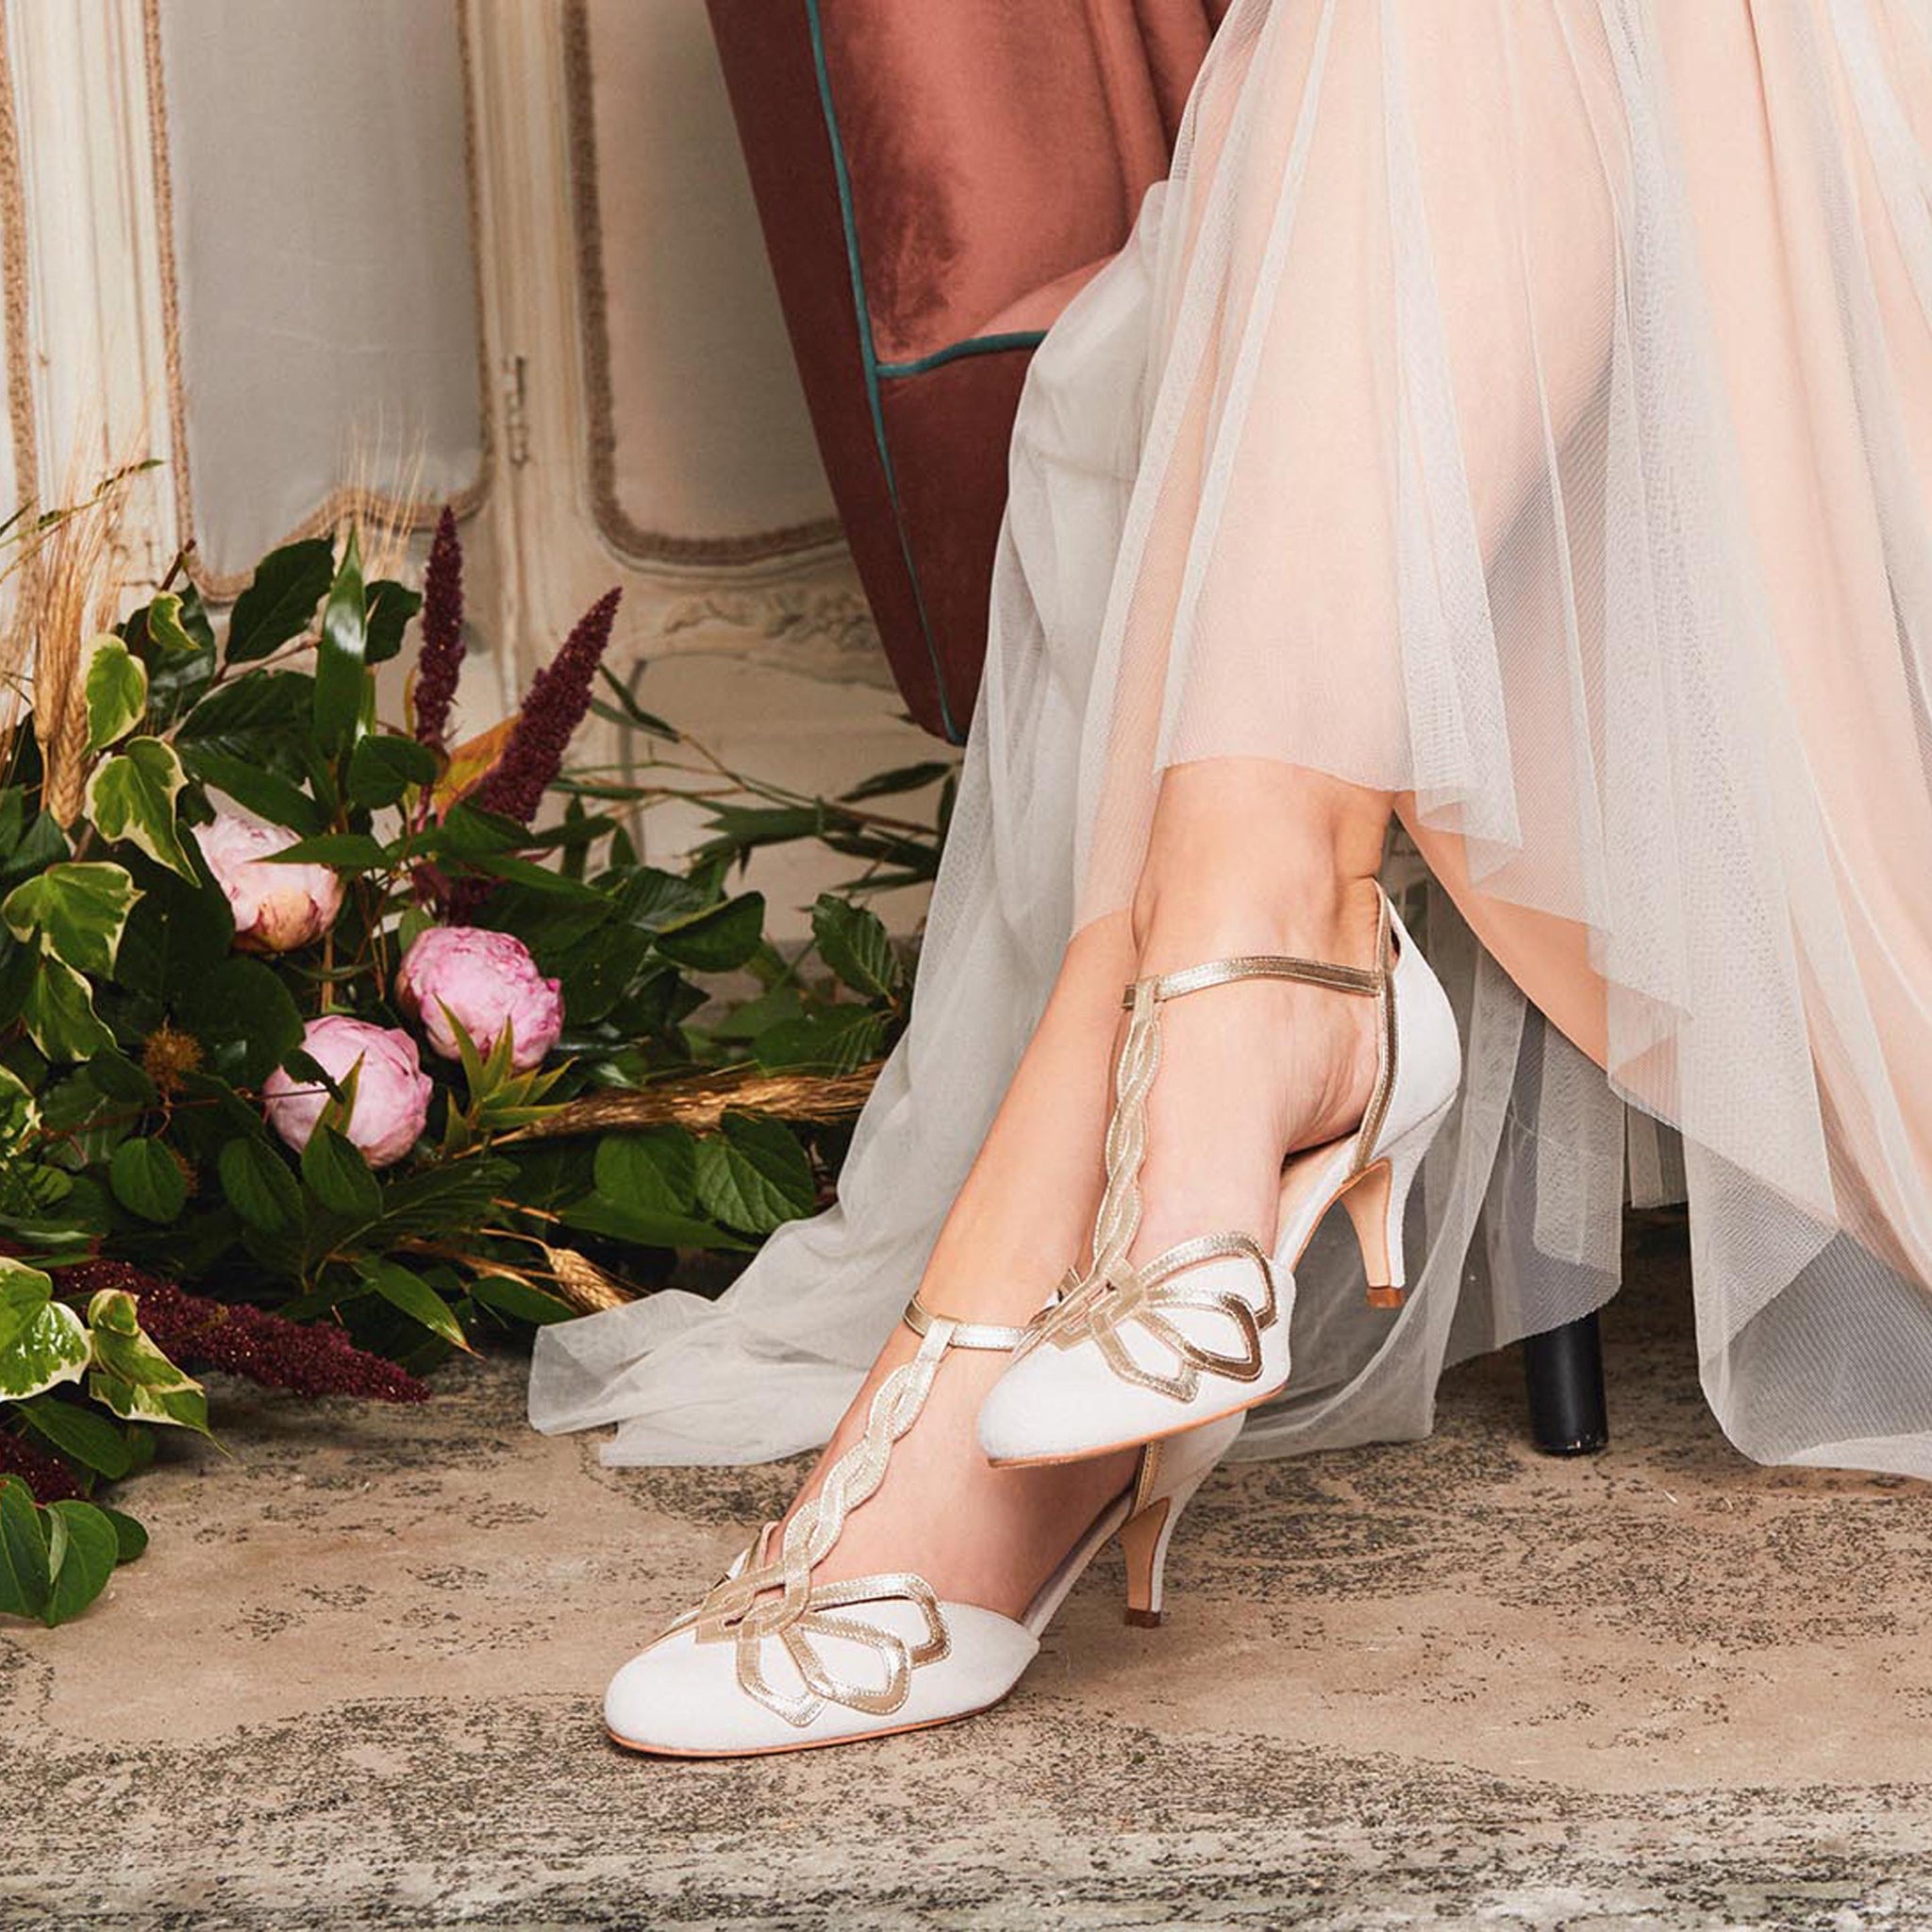 pink wedding shoes low heel